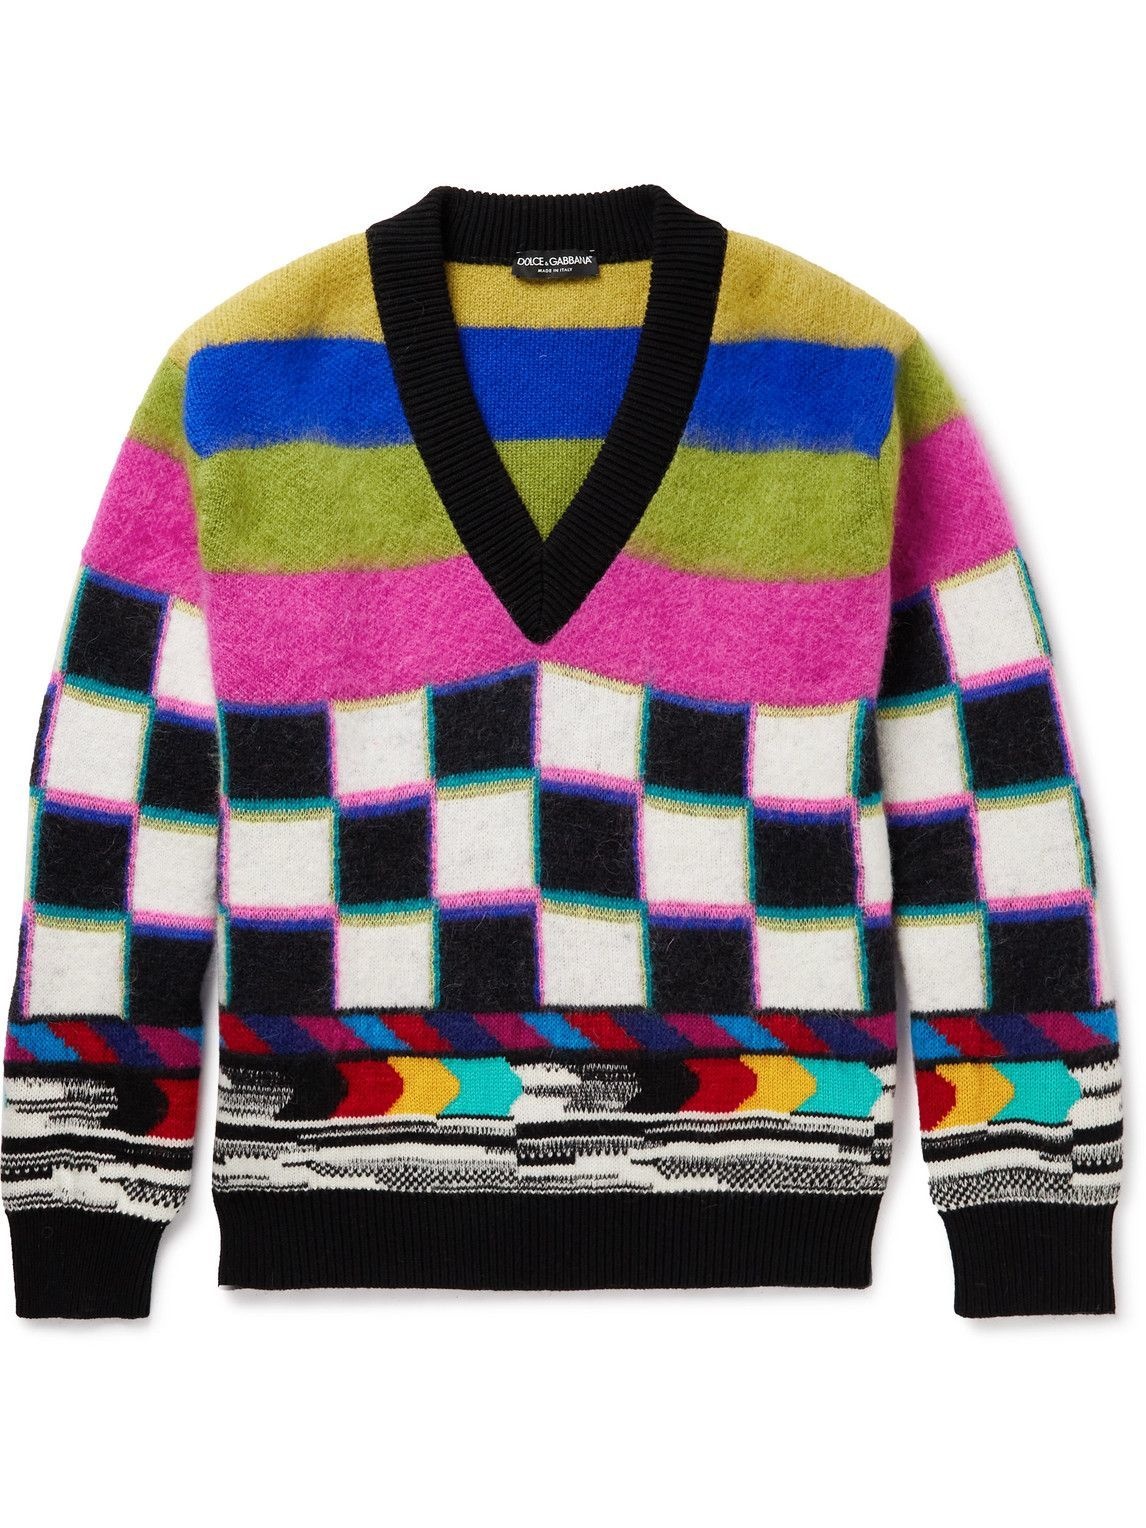 Dolce & Gabbana - Jacquard-Knit Sweater - Multi Dolce & Gabbana